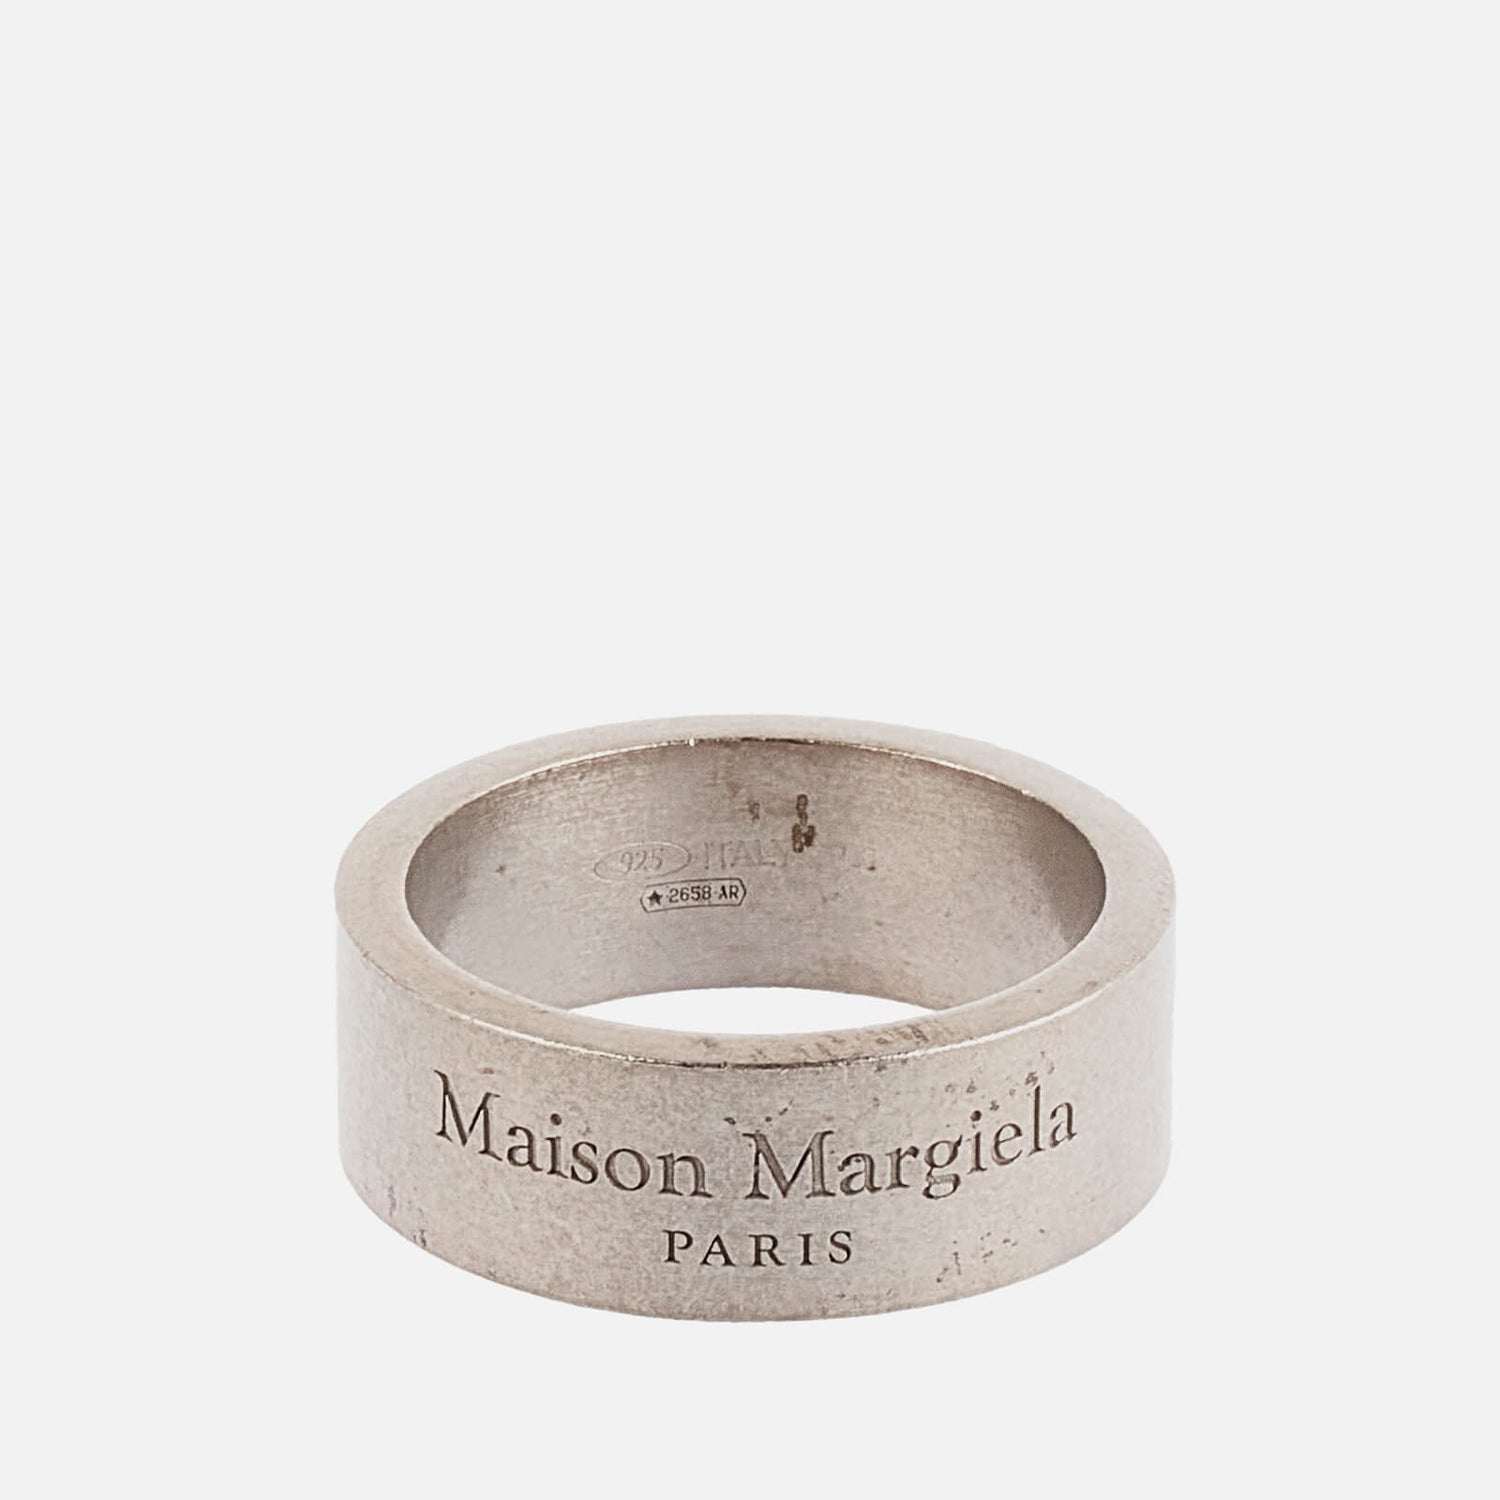 Maison Margiela Men's Branded Ring - Palladio Semi Polished